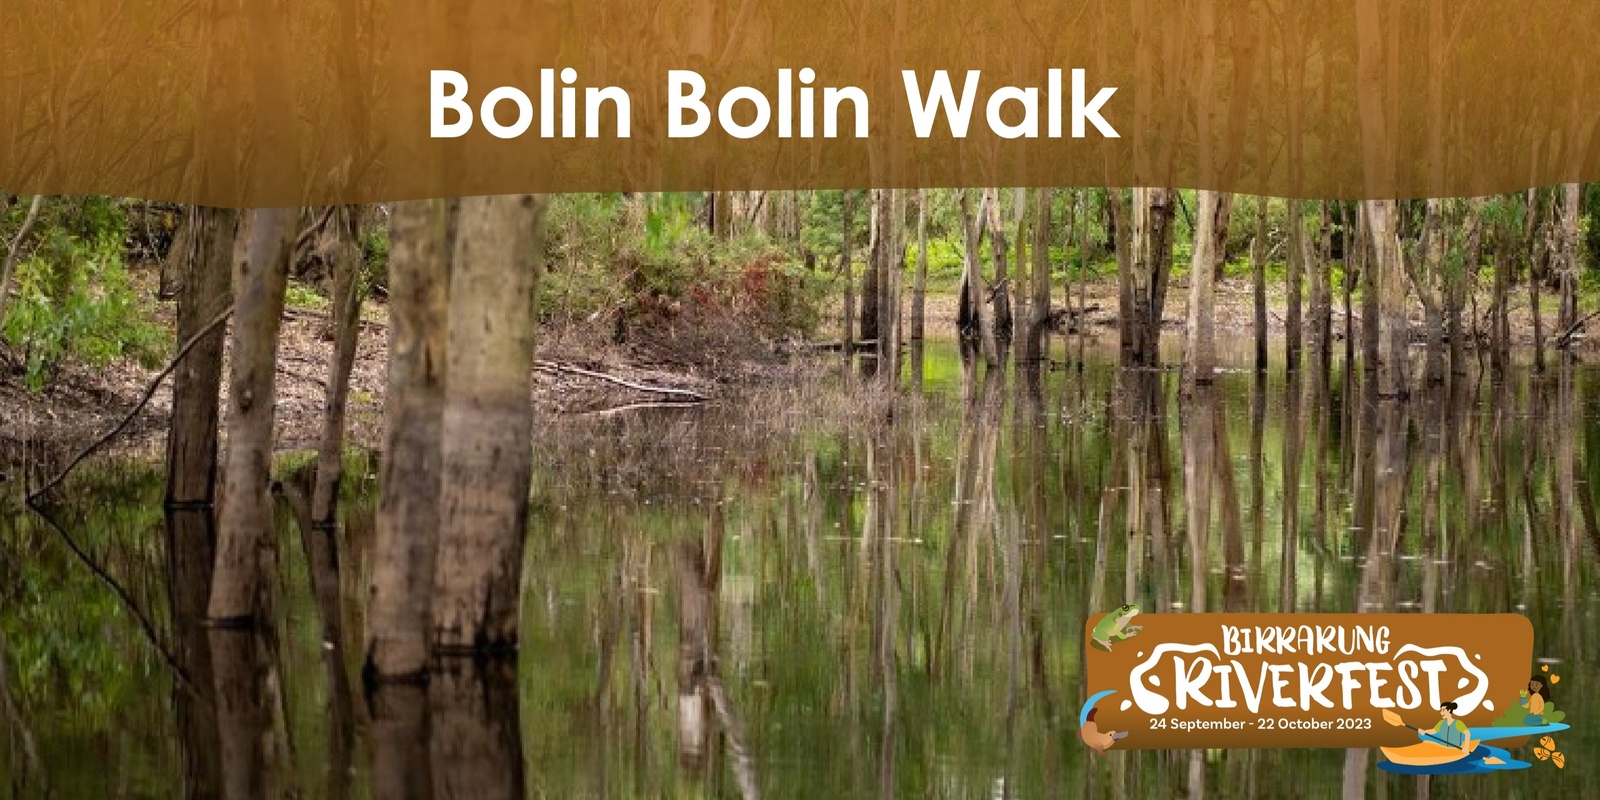 Banner image for Bolin Bolin billabong walk